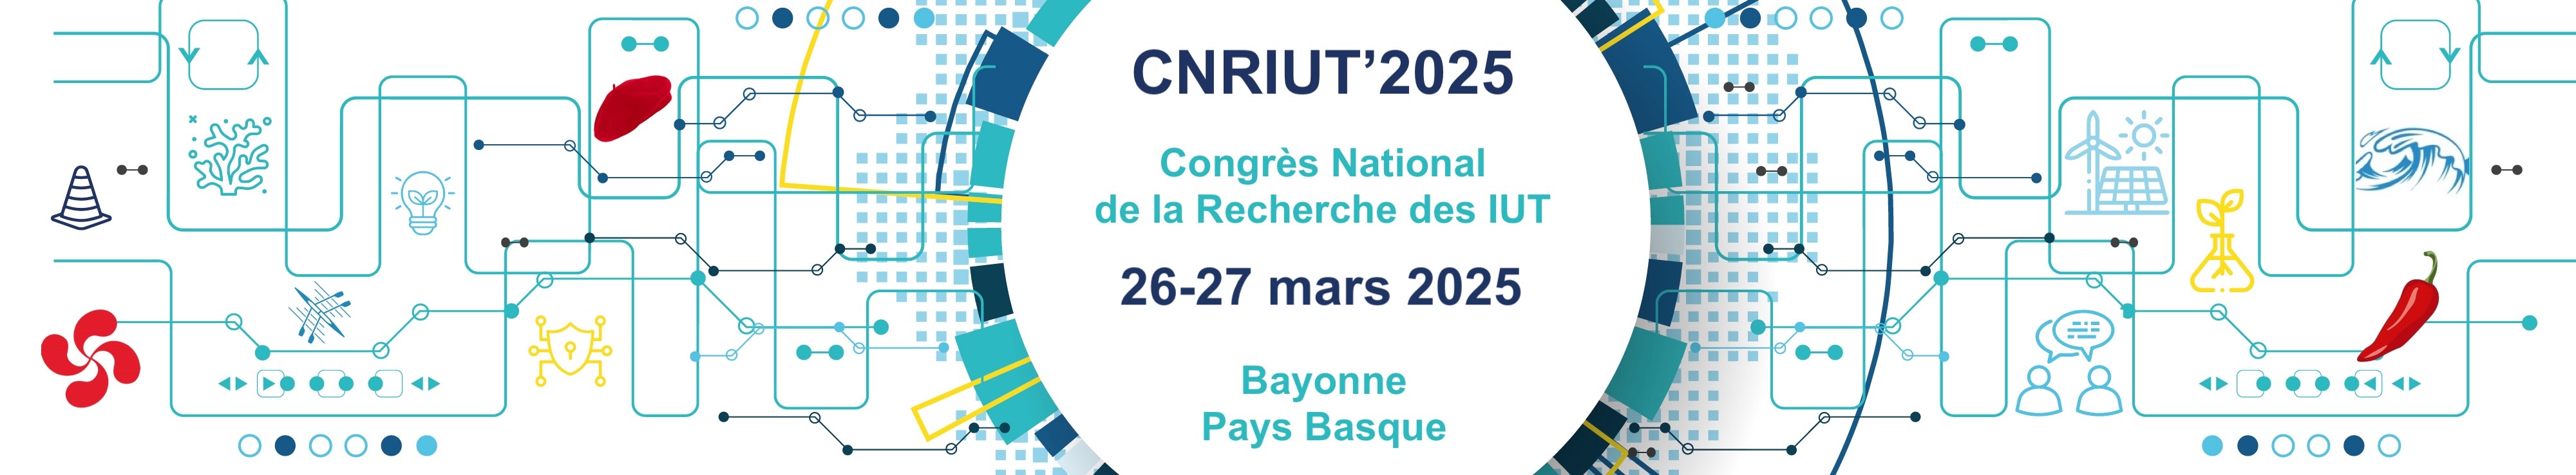 CNRIUT 2025 Bayonne